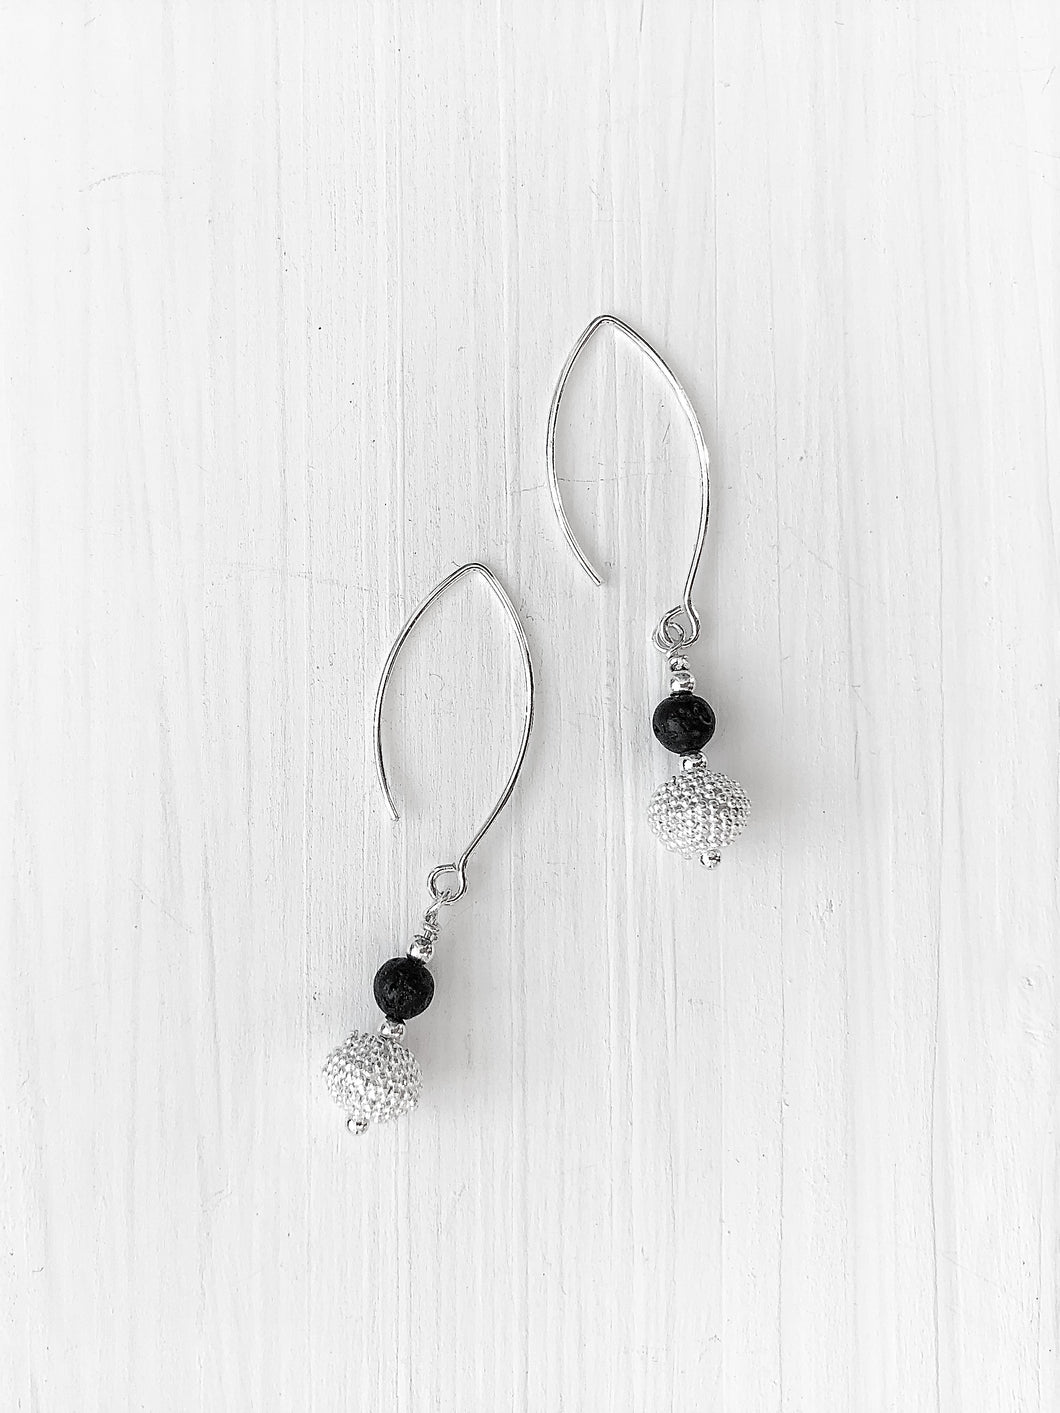 Handgemachte Ohrhänger von Svenja Scharwächter aus schwarzer Lava und einer diamantierten Zierkugel an einer Brisur aus Echtsilber online kaufen.